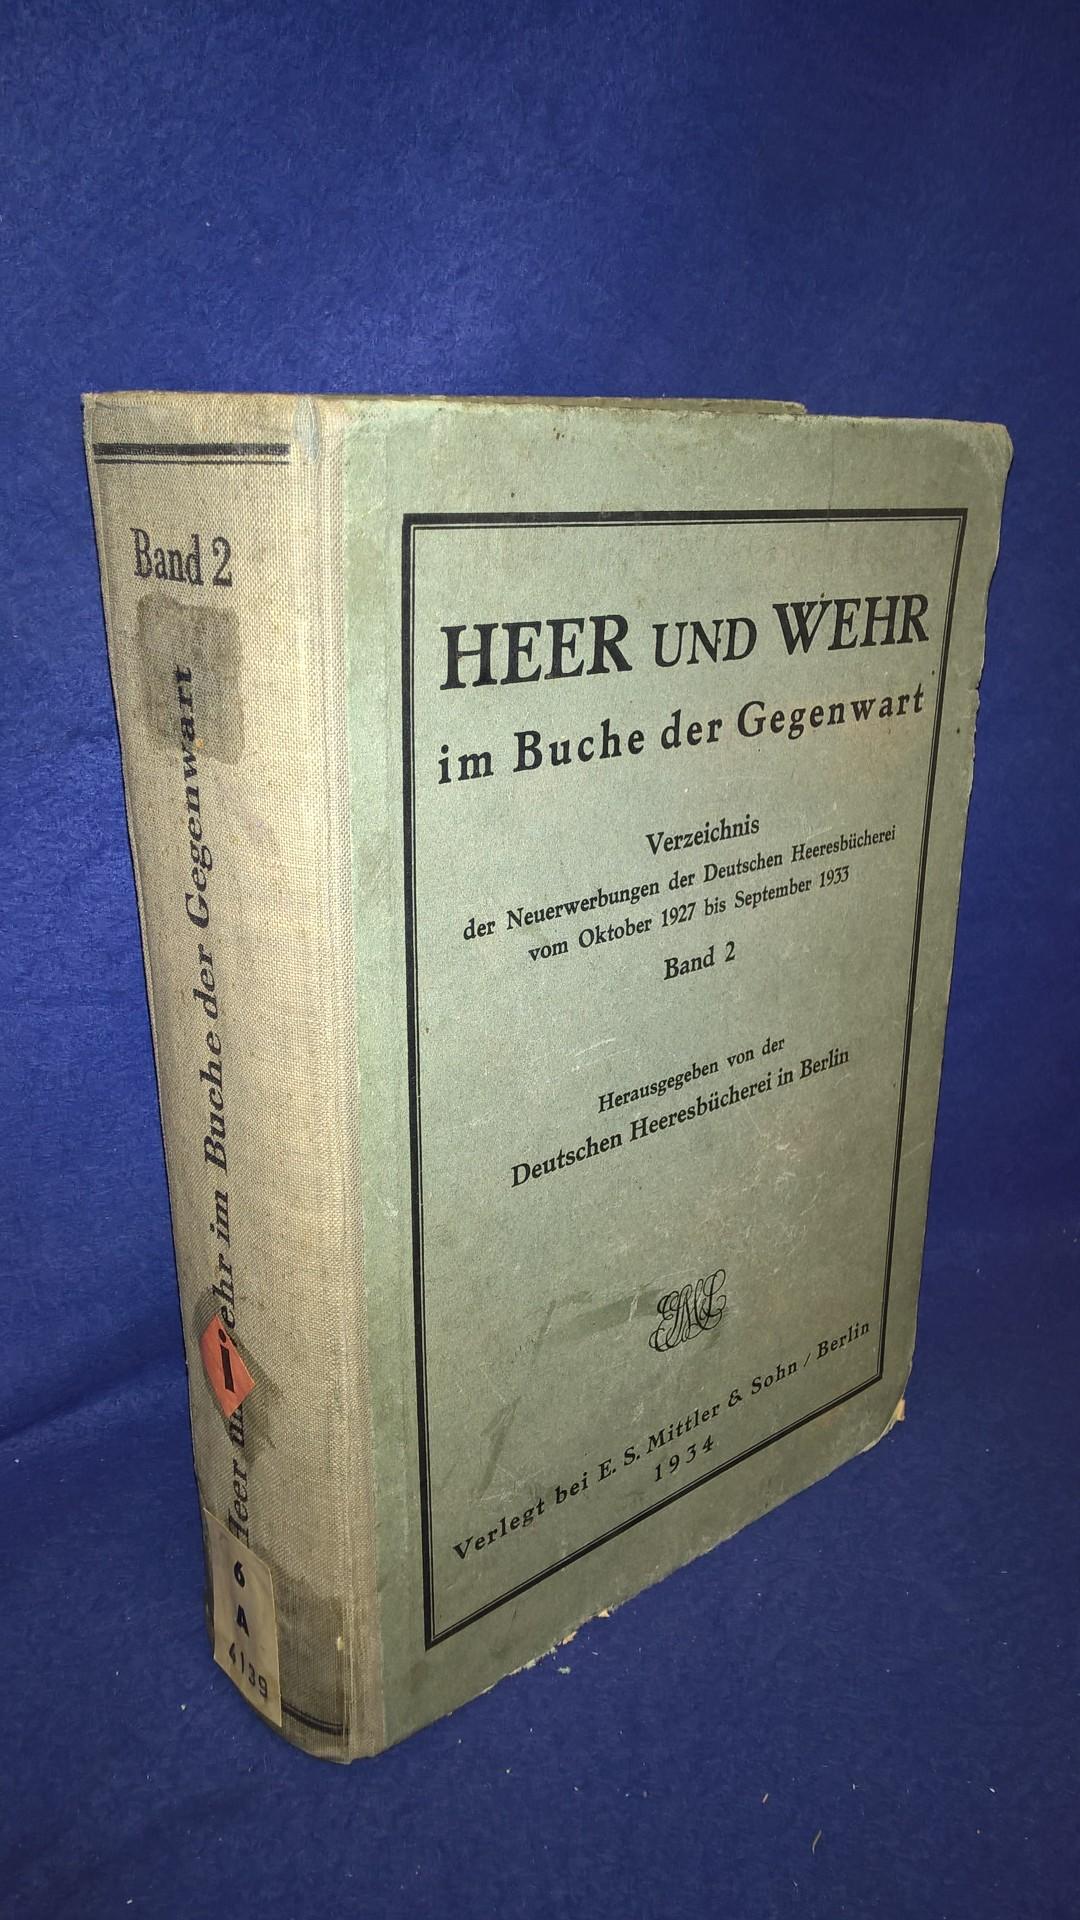 Heer und Wehr im Buche der Gegenwart. Verzeichnis der Neuerwerbungen der Deutschen Heeresbücherei vom Oktoer 1927 bis September 1933. Band 2.